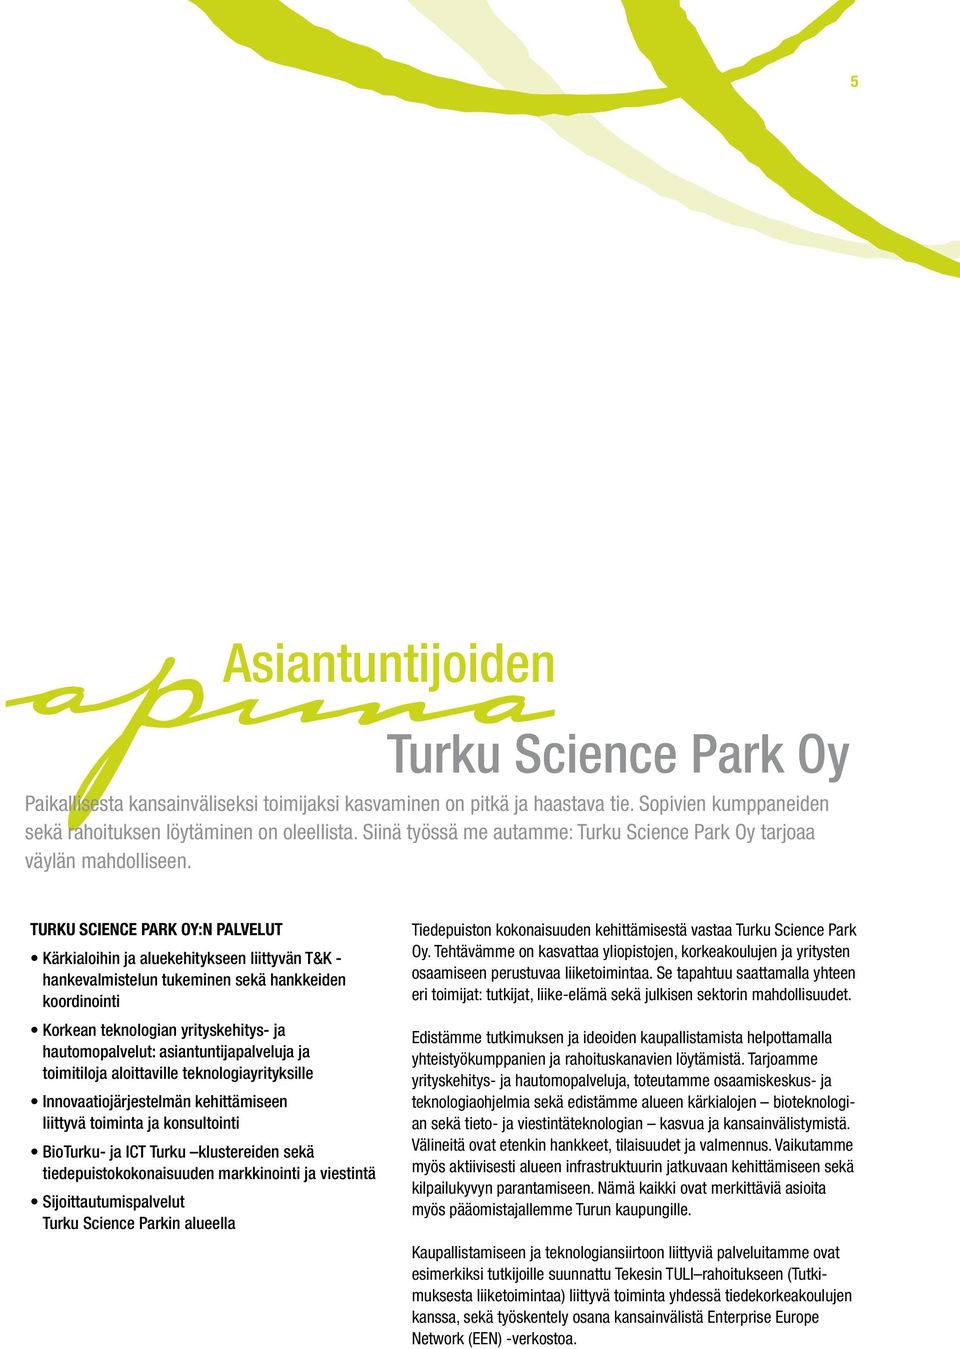 TURKU SCIENCE PARK OY:N PALVELUT Kärkialoihin ja aluekehitykseen liittyvän T&K - hankevalmistelun tukeminen sekä hankkeiden koordinointi Korkean teknologian yrityskehitys- ja hautomopalvelut: